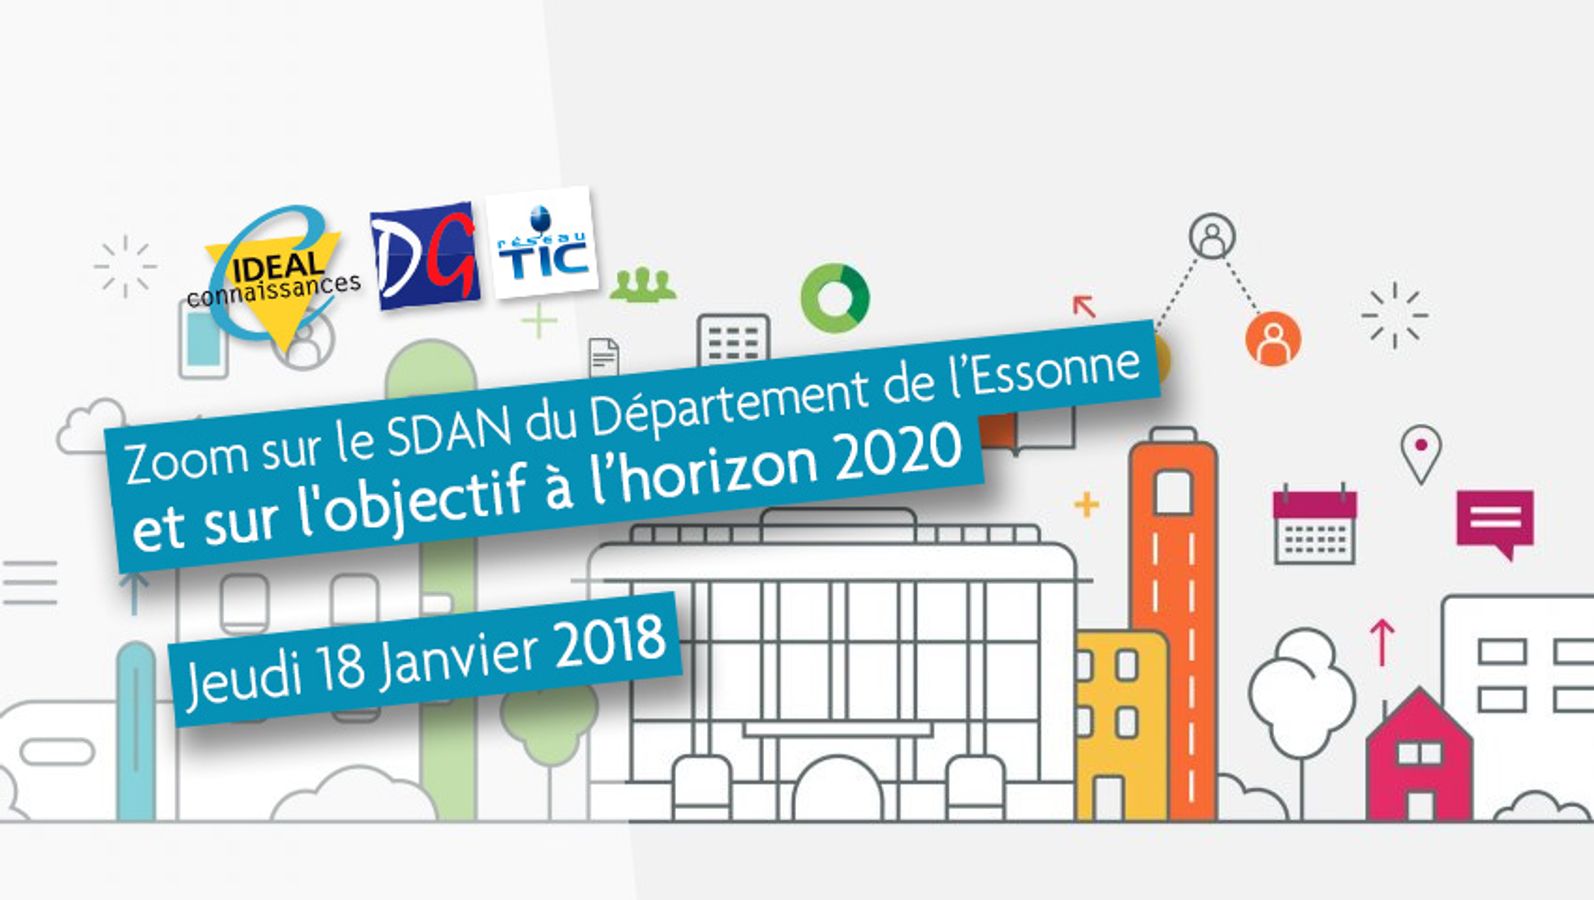 Zoom sur le SDAN du Département de l’Essonne et sur l'objectif à l’horizon 2020